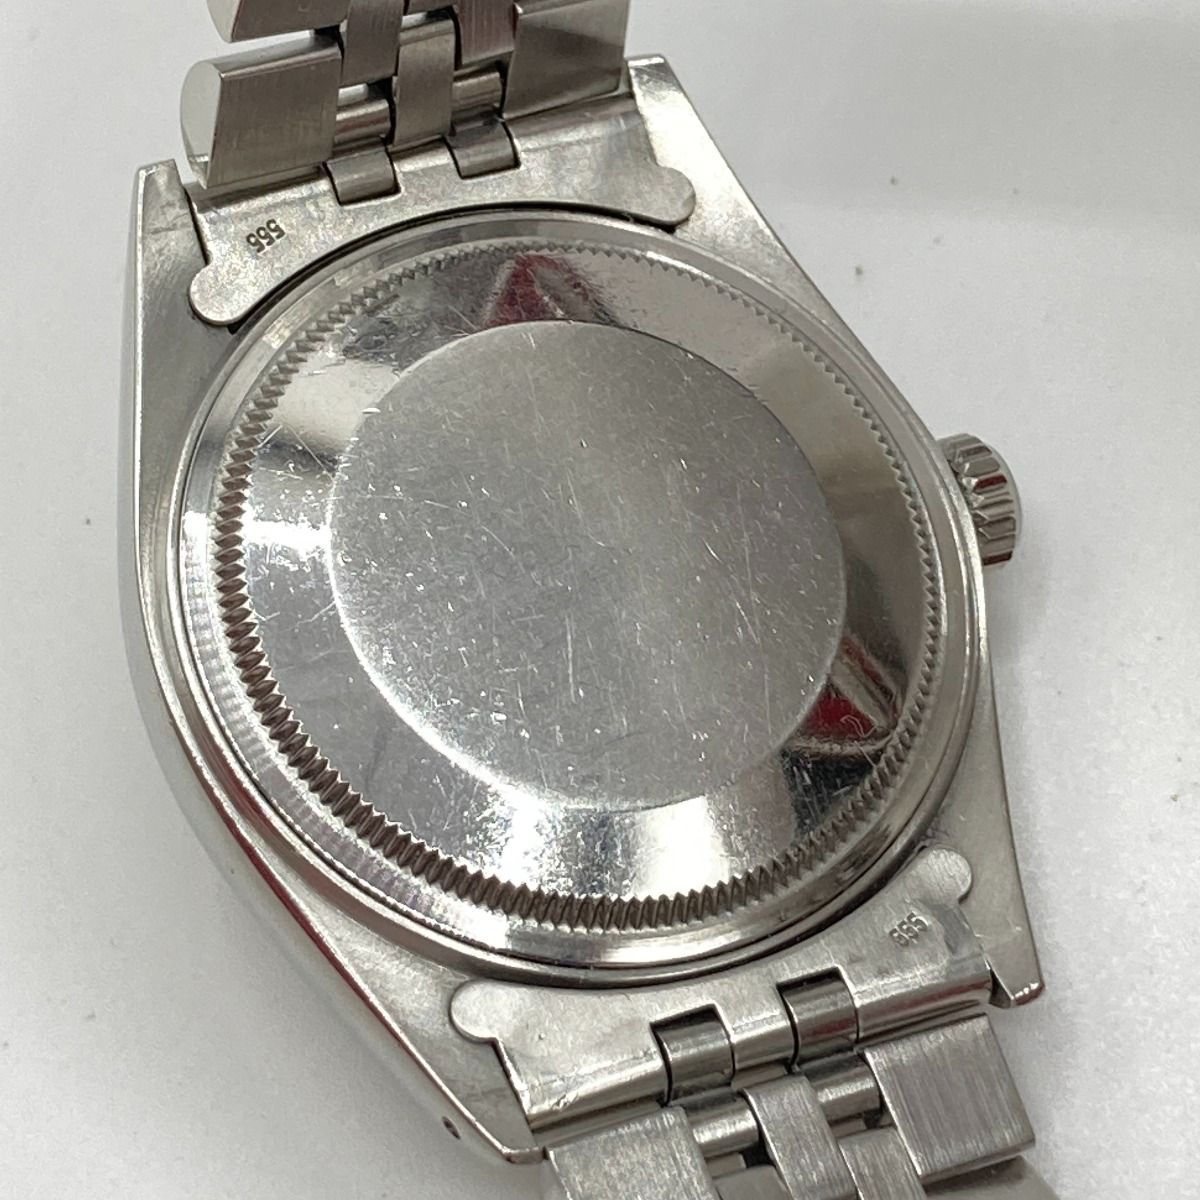 ◎◎ROLEX ロレックス デイトジャスト 自動巻 腕時計 16014 本体のみ